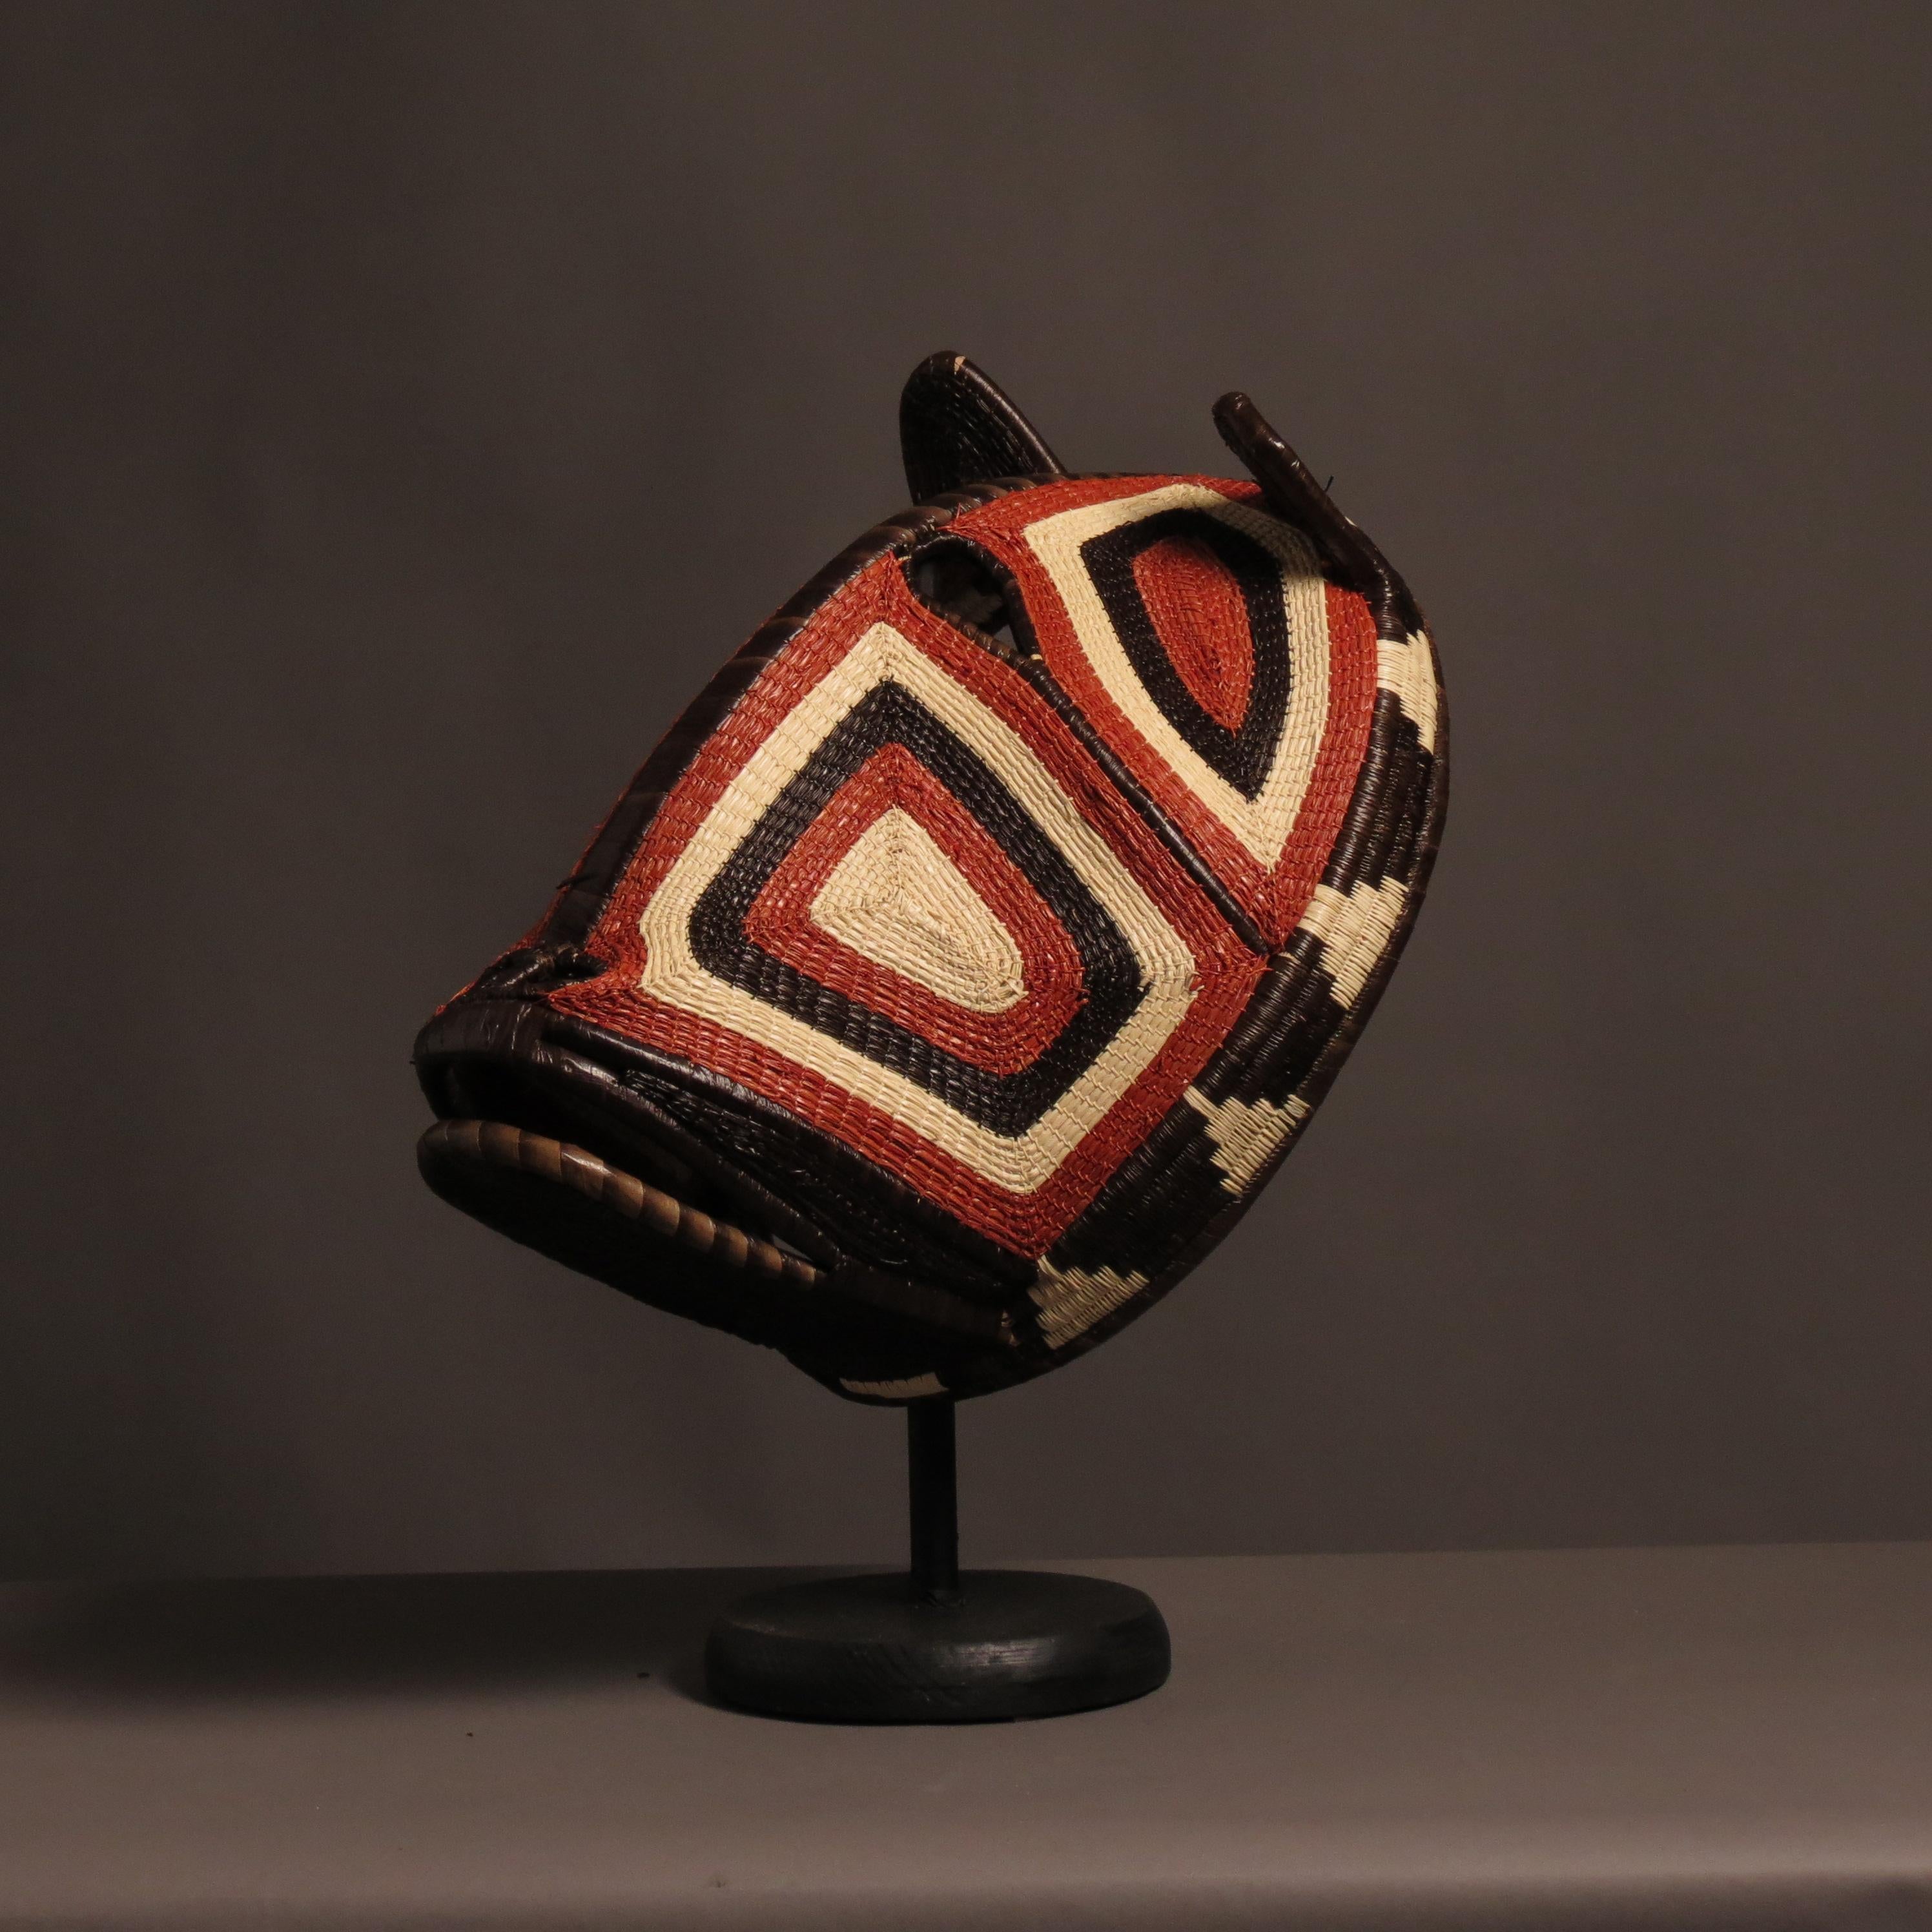 Extraordinaire œuvre d'art et de décoration, ce masque est issu des croyances et rituels chamaniques des tribus d'Amérique centrale.
Les peuples indigènes divisent le monde en deux, un monde visible et un monde parallèle qui est invisible.
Ces